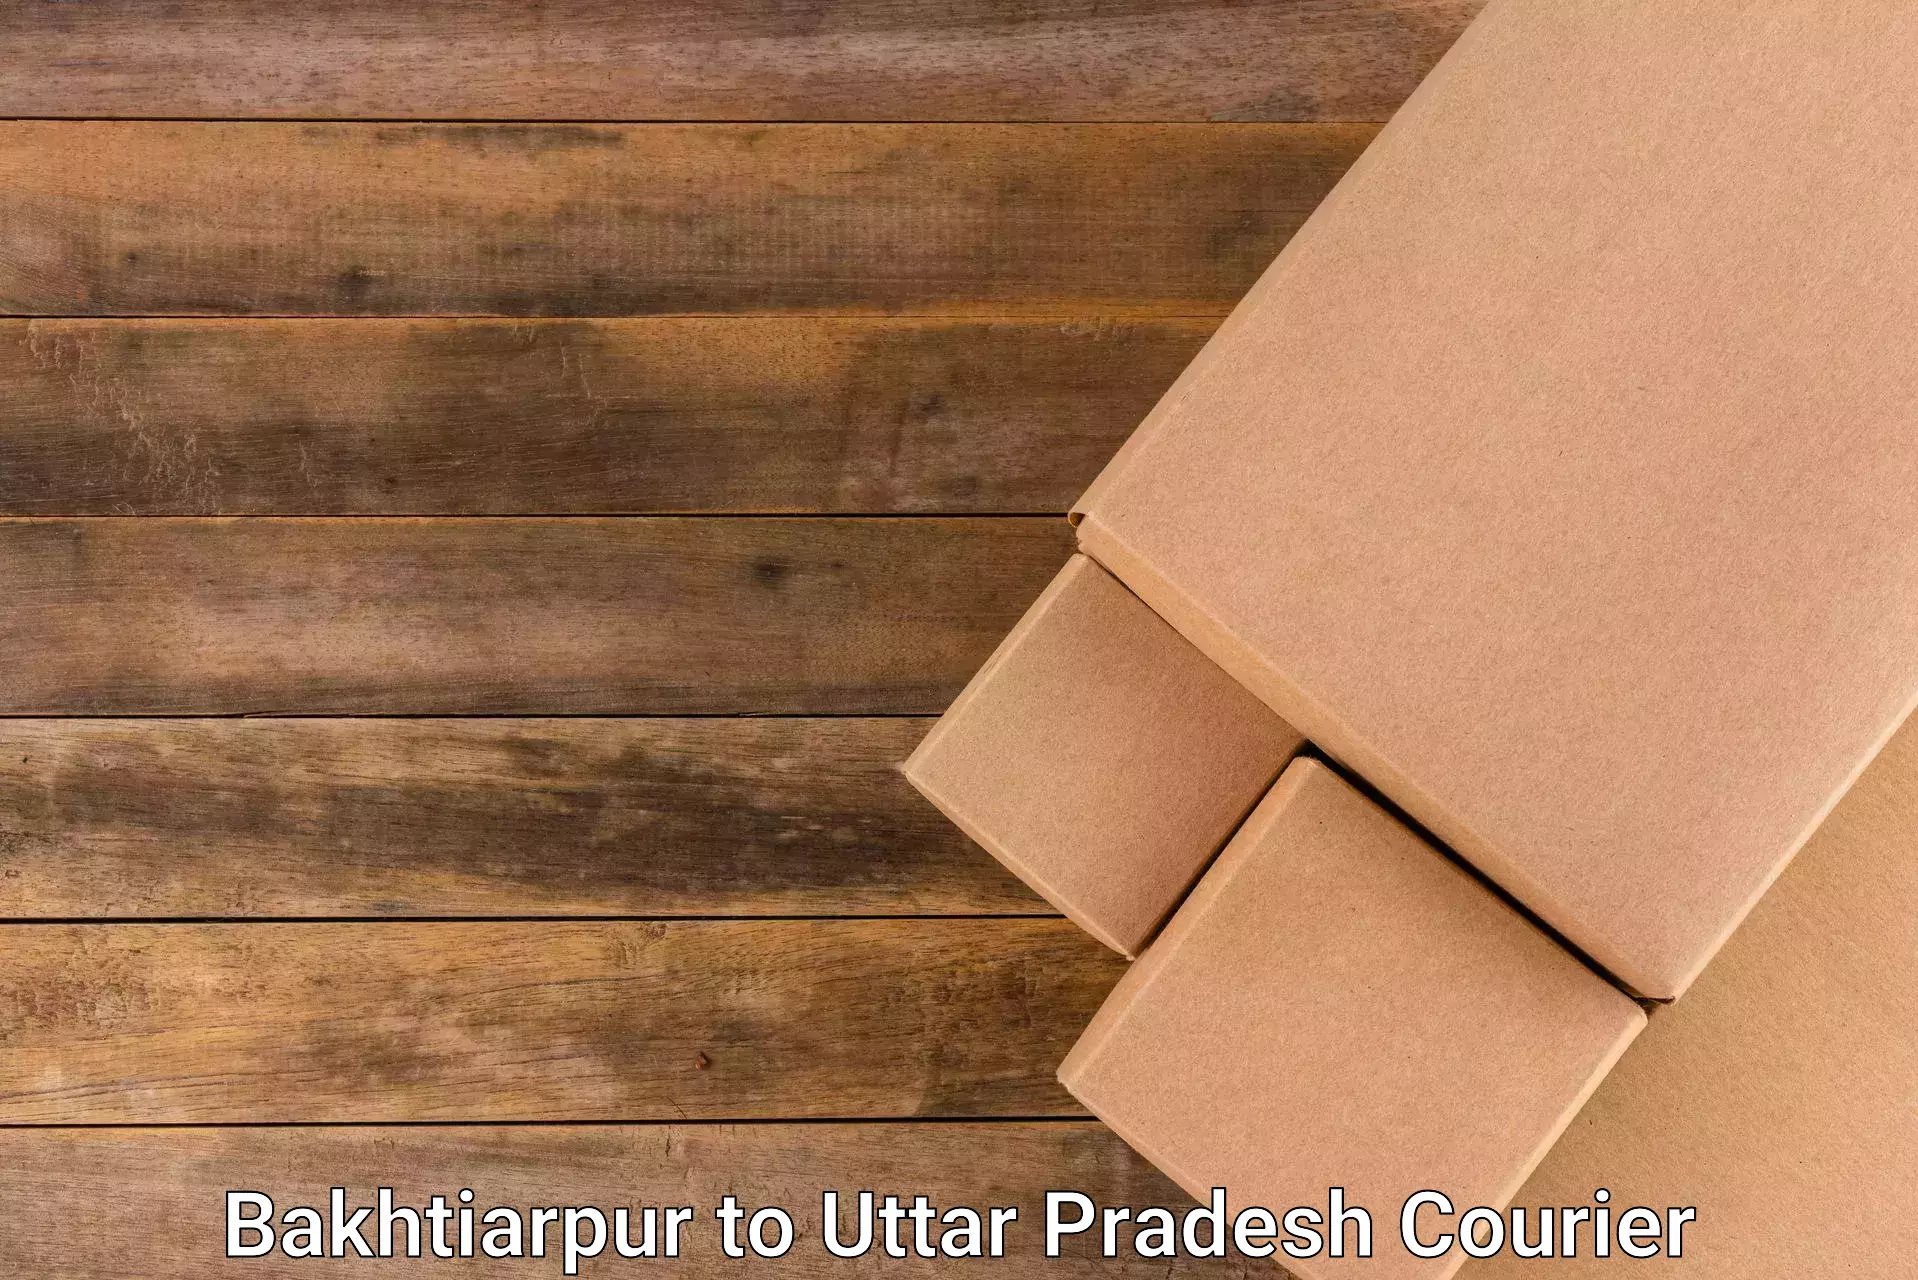 Professional parcel services Bakhtiarpur to Meerut